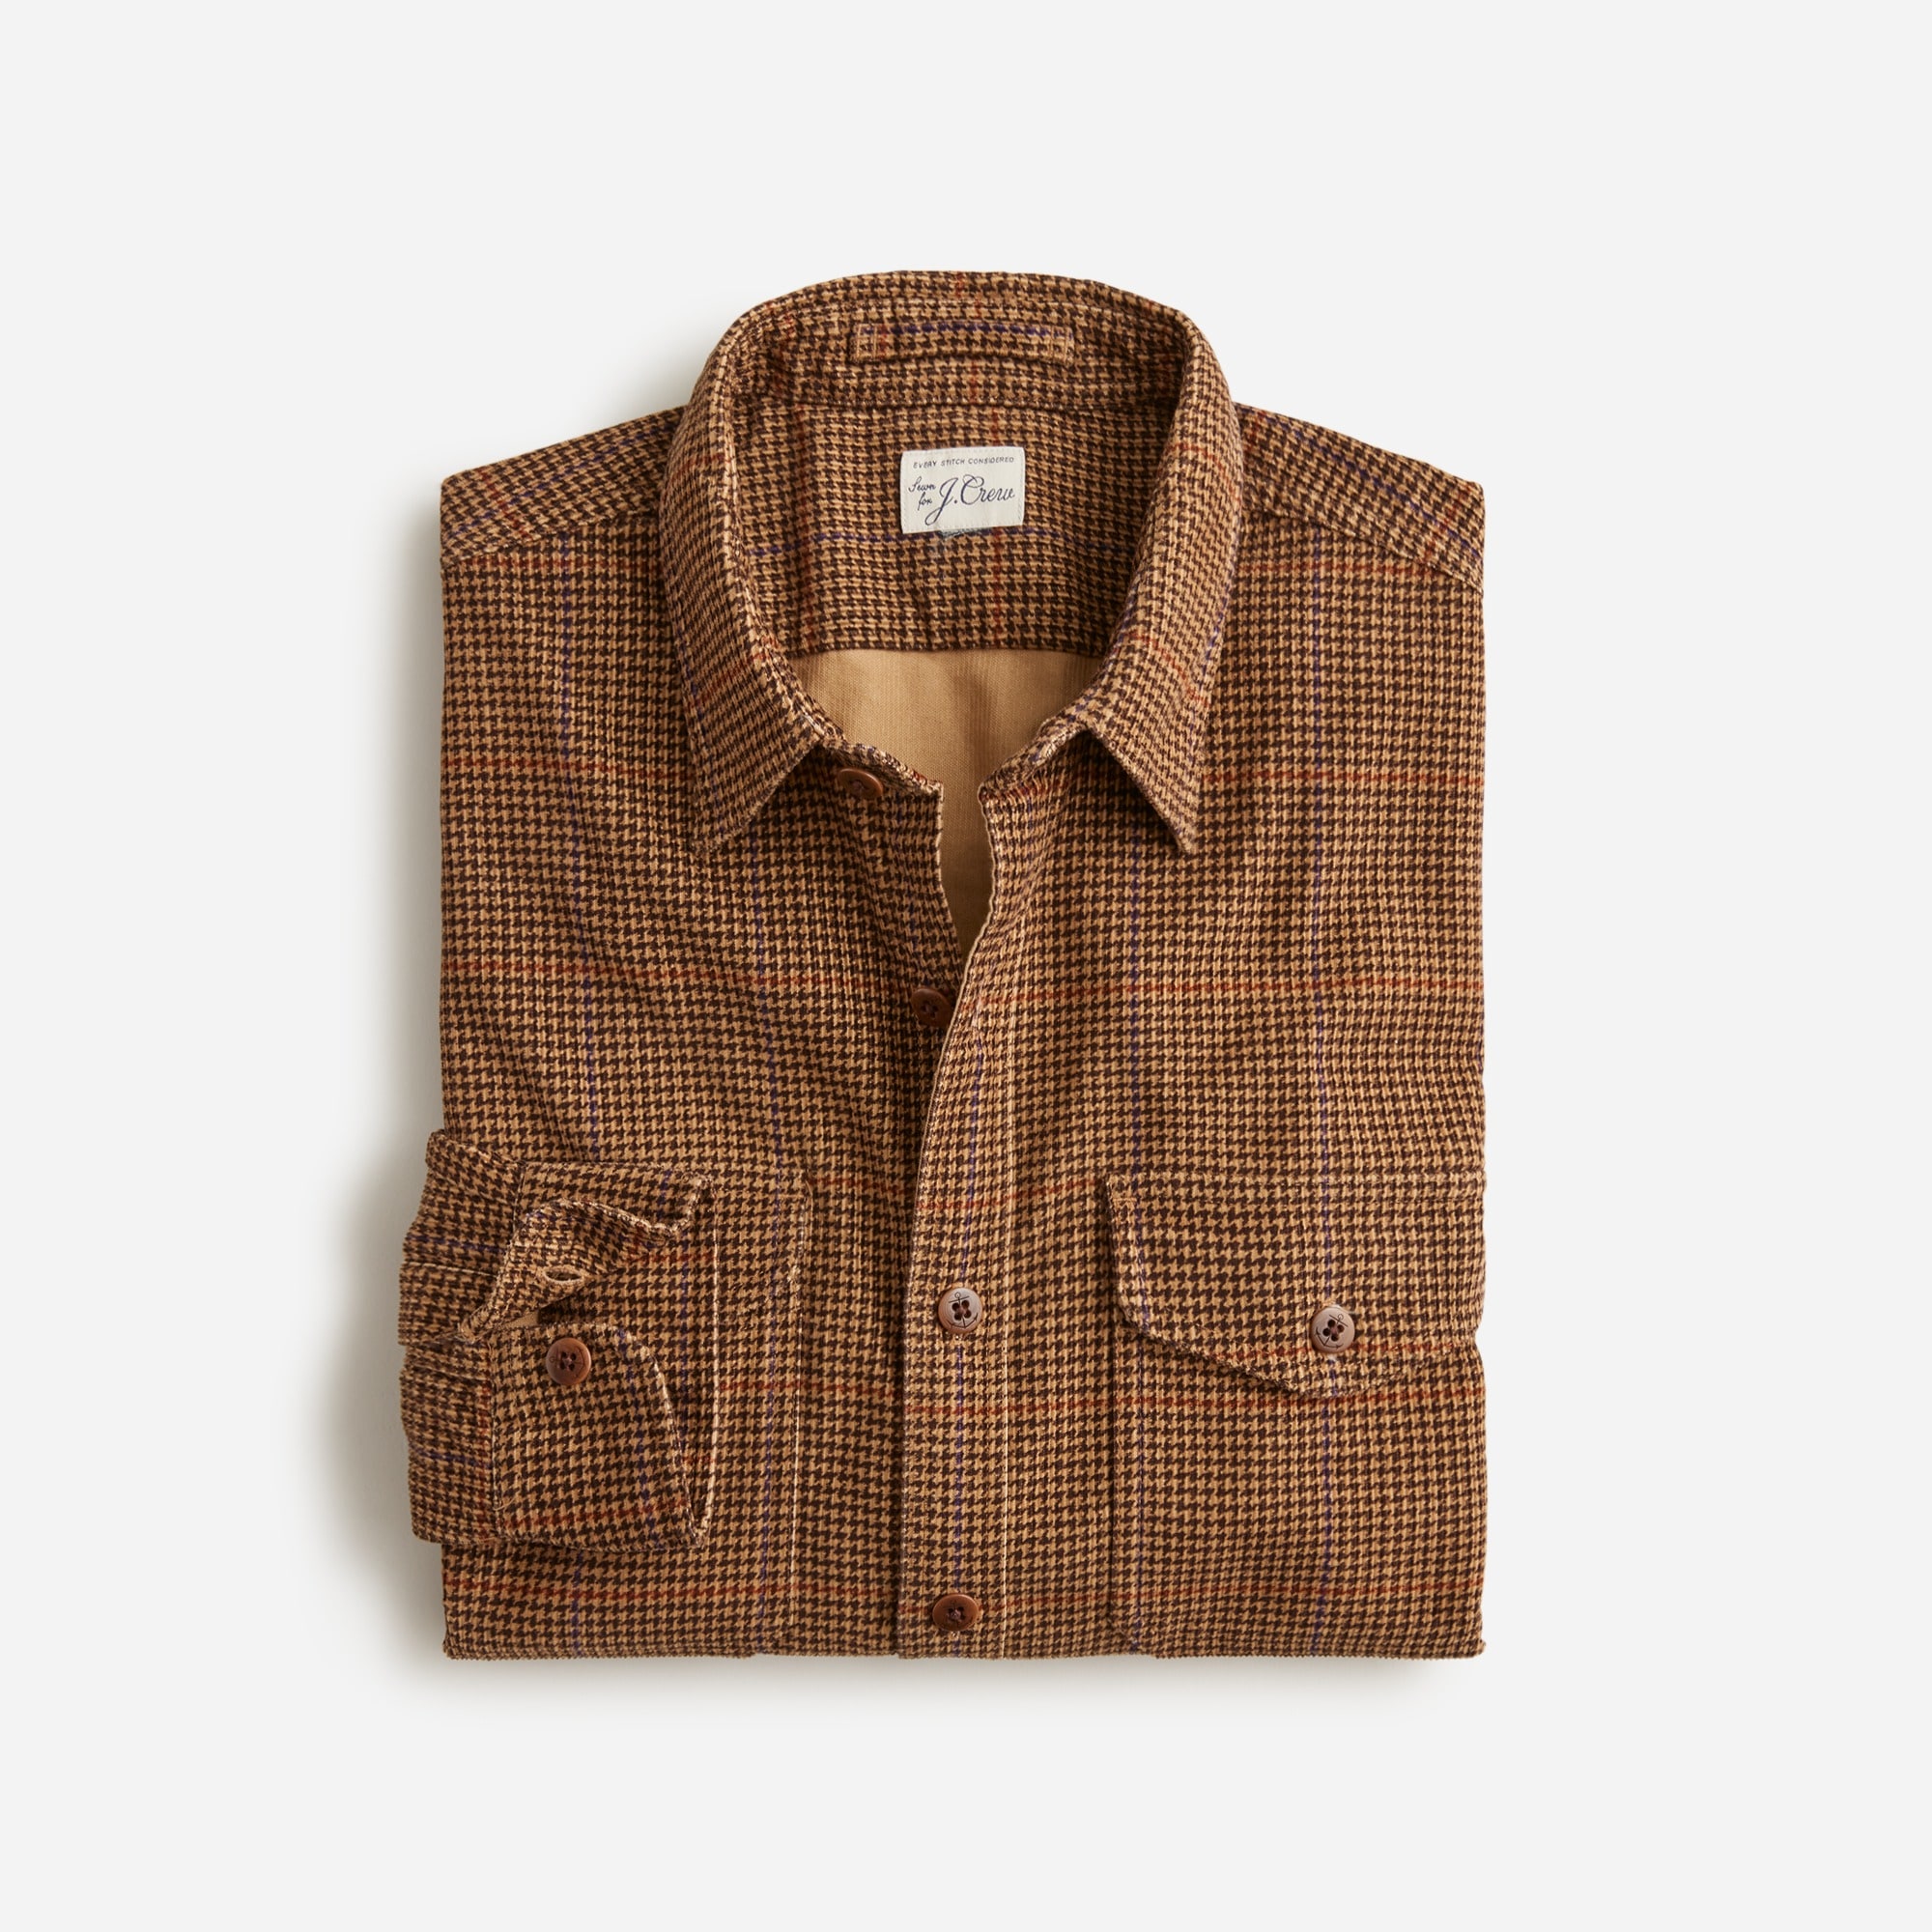  14-wale corduroy shirt in pattern